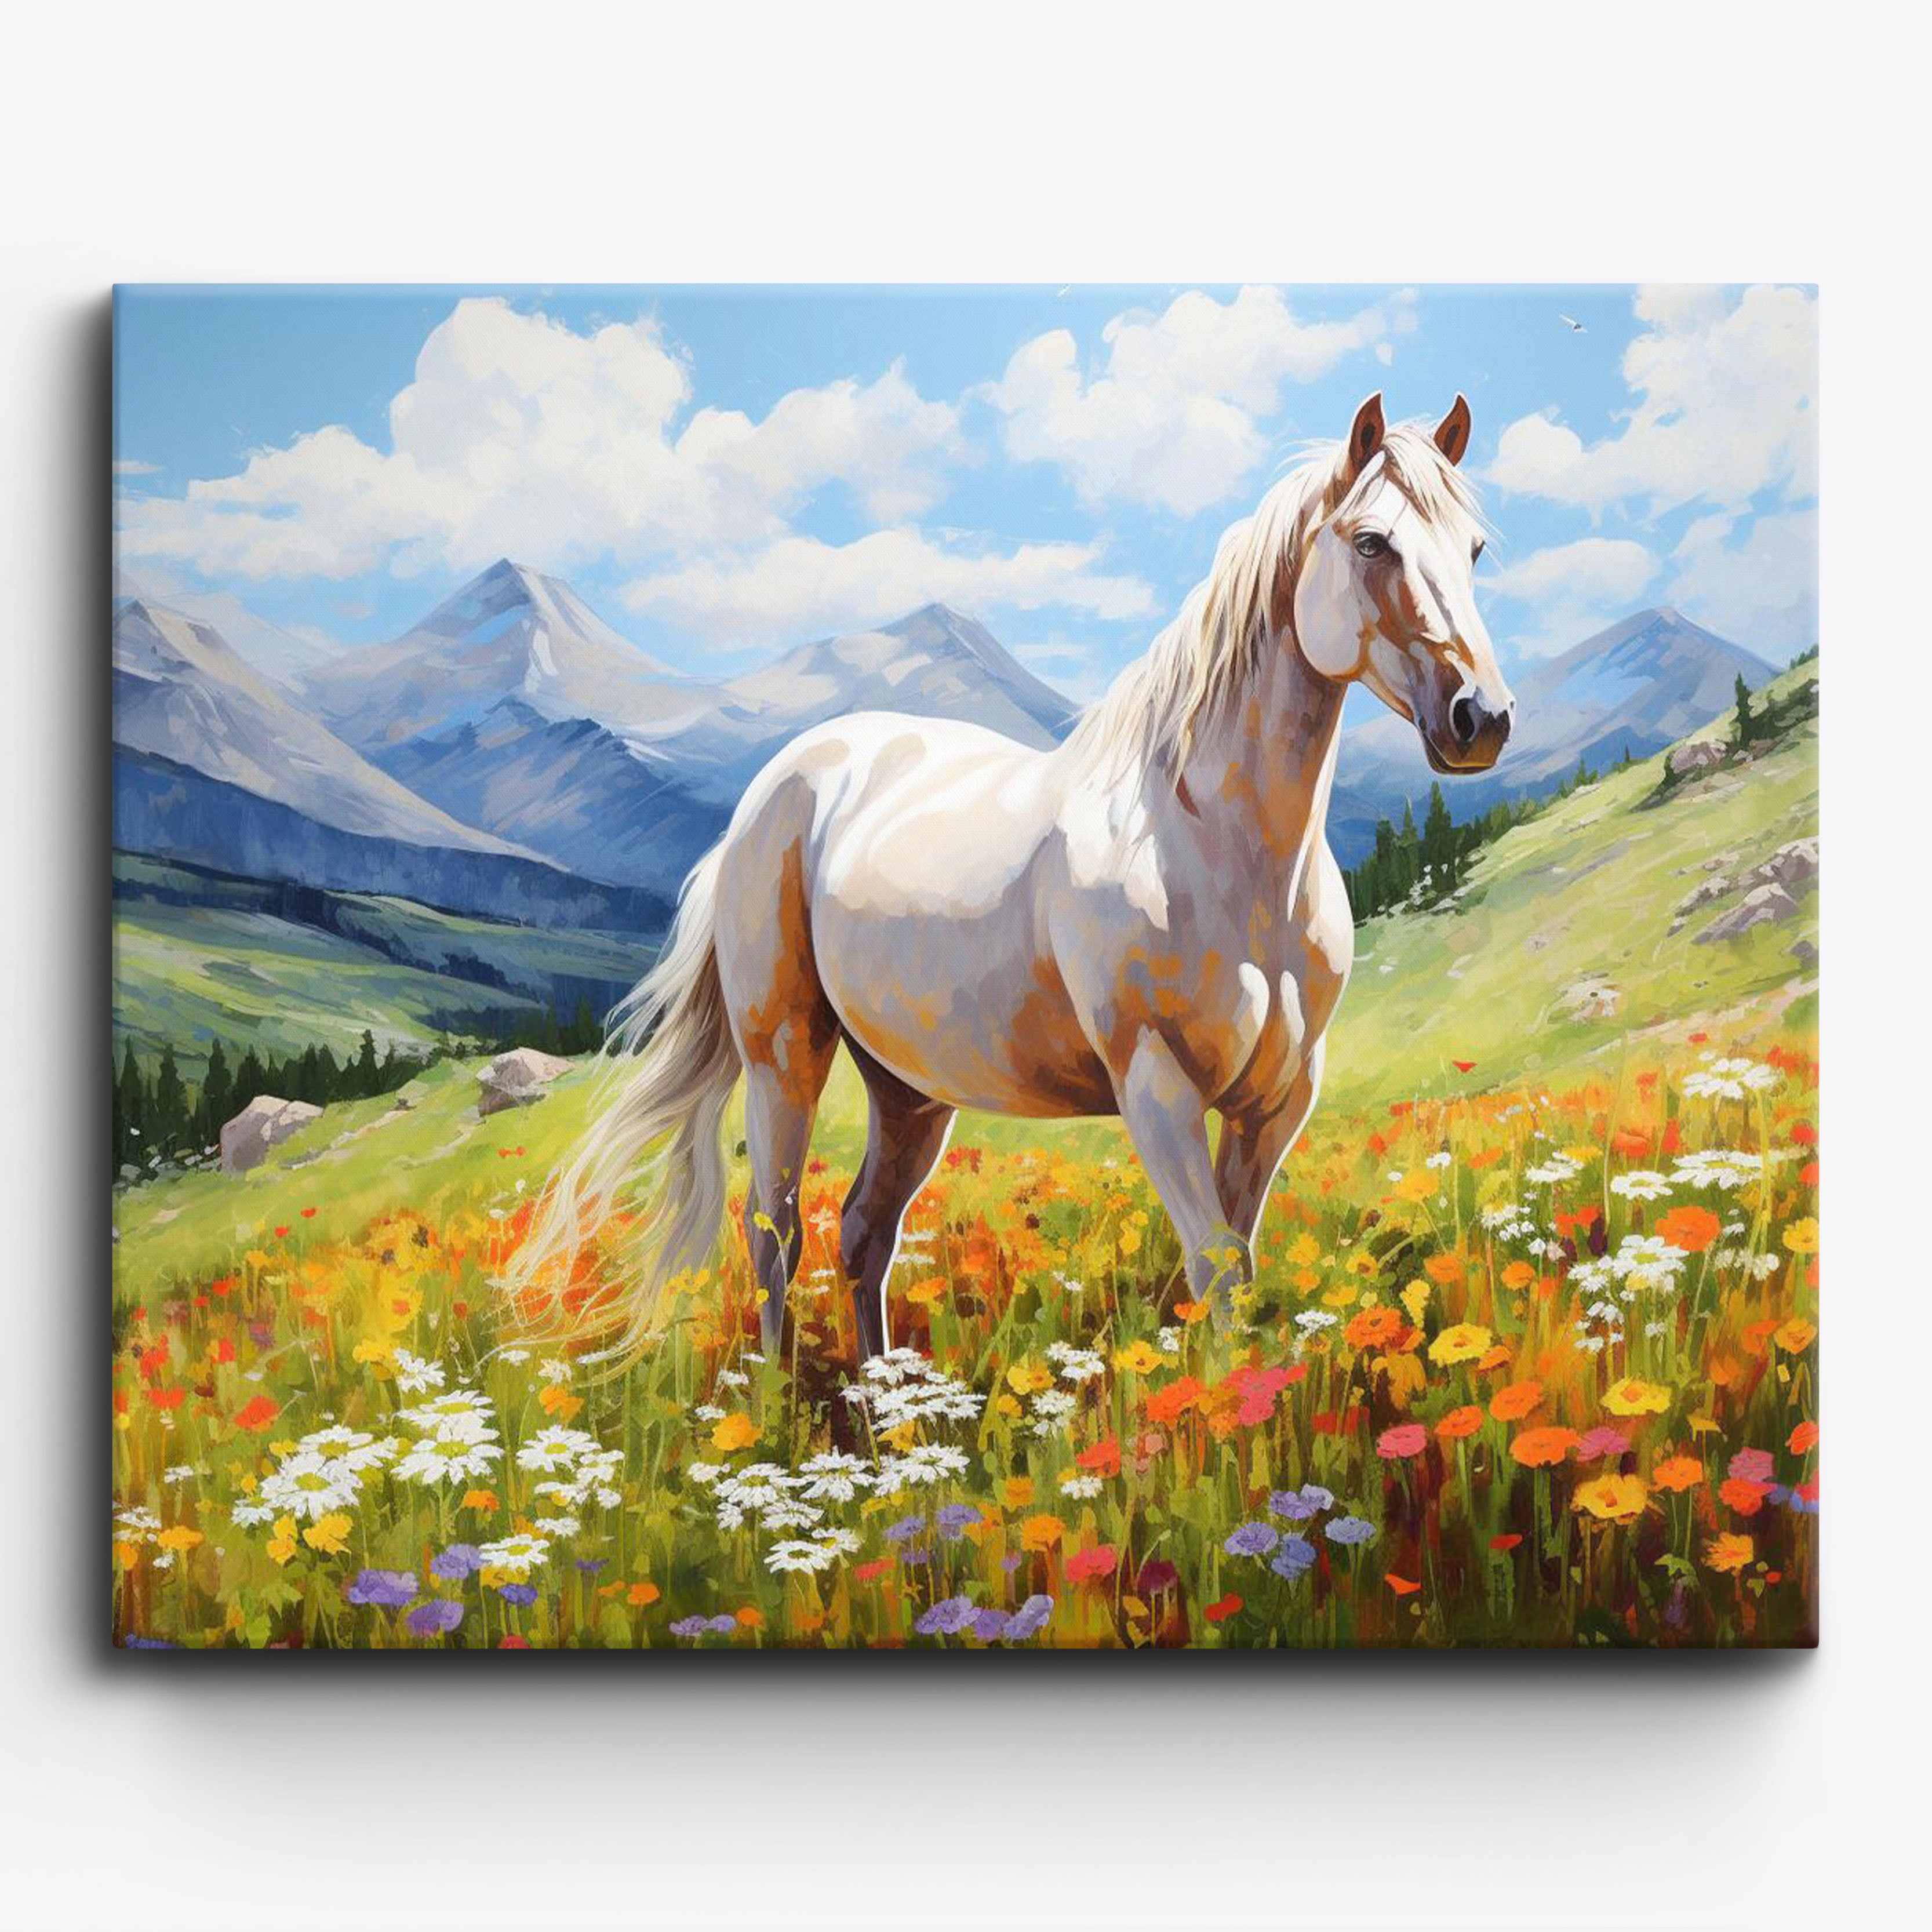 Il cavallo bianco di Meadow Grace